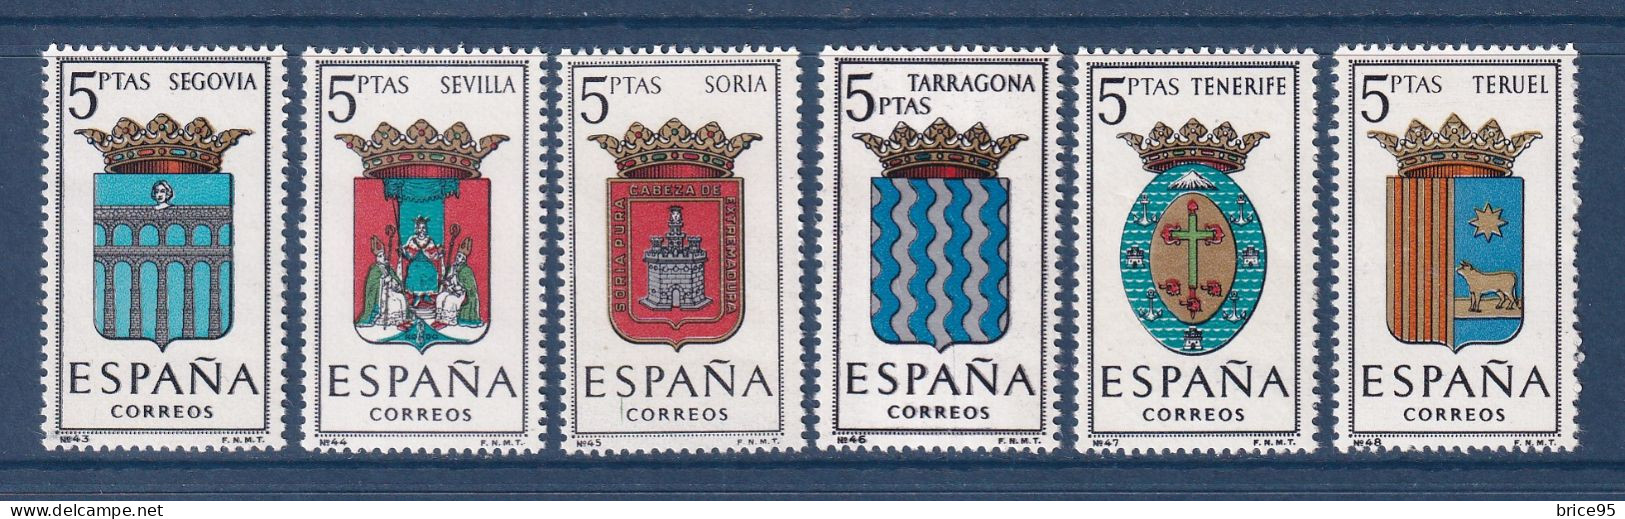 Espagne - YT N° 1326 à 1331 ** - Neuf Sans Charnière - 1965 - Unused Stamps